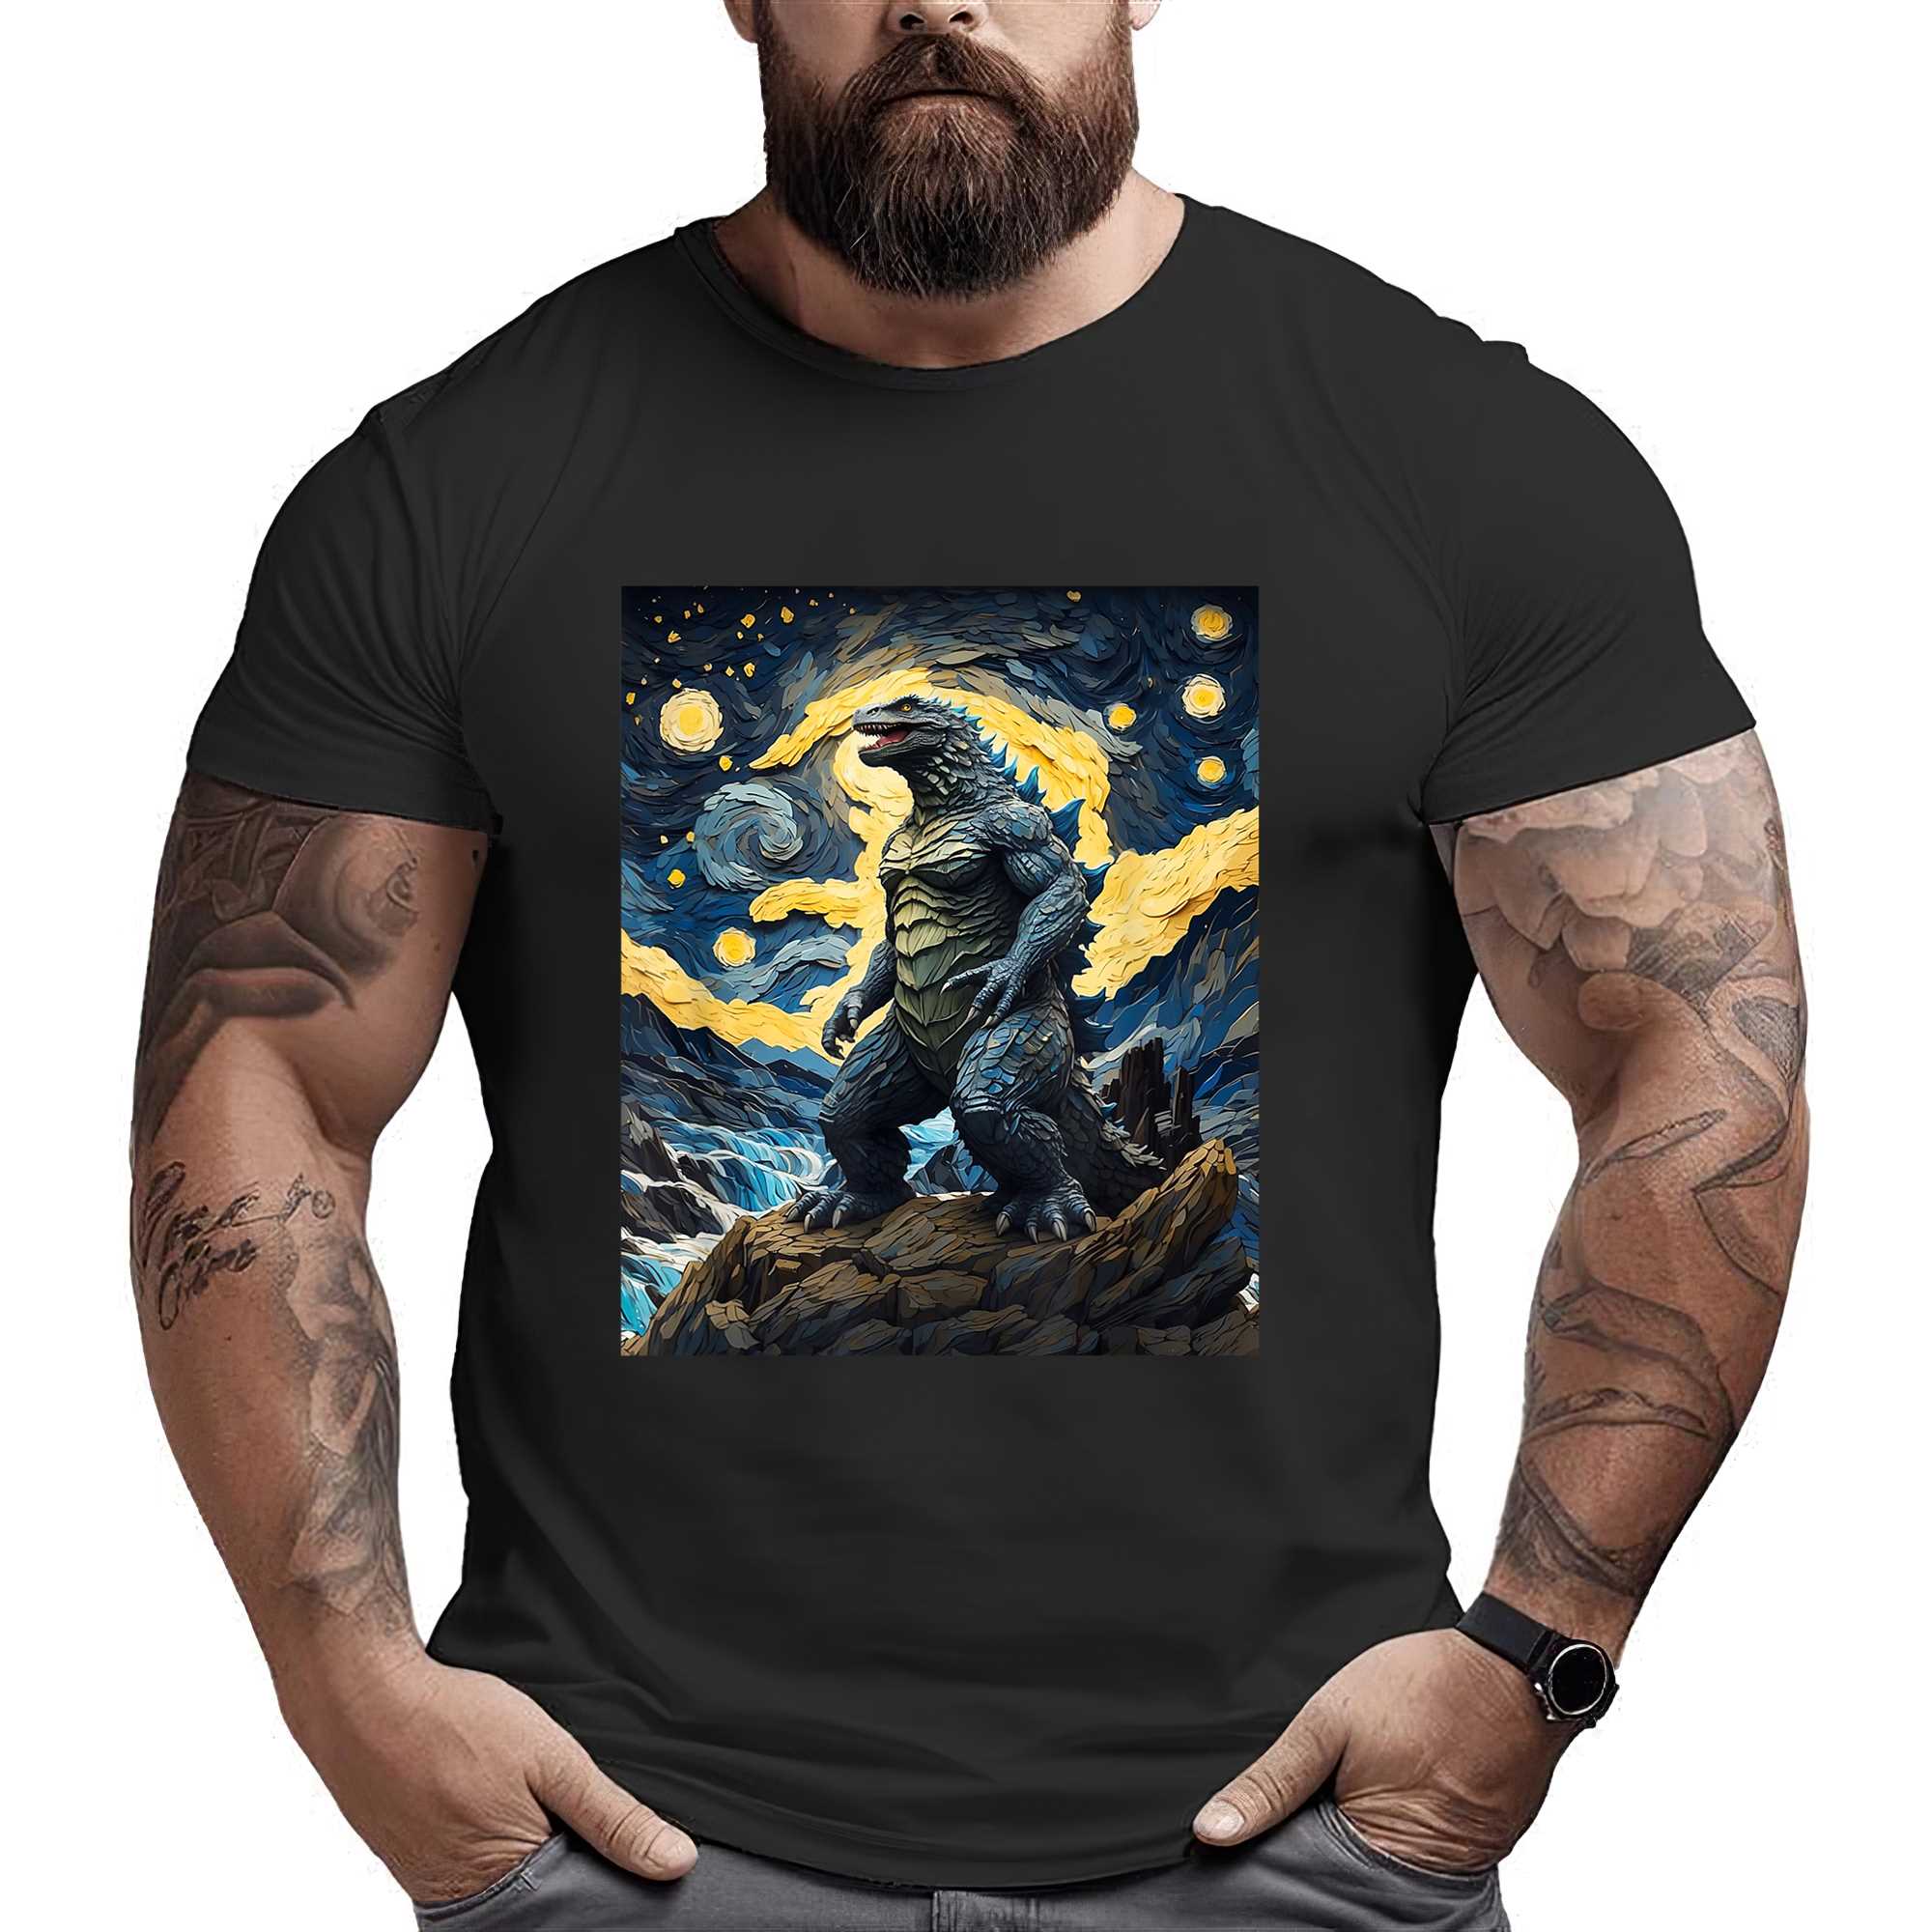 Japanese Monster Kaiju In Van Gogh Starry Night T-shirt